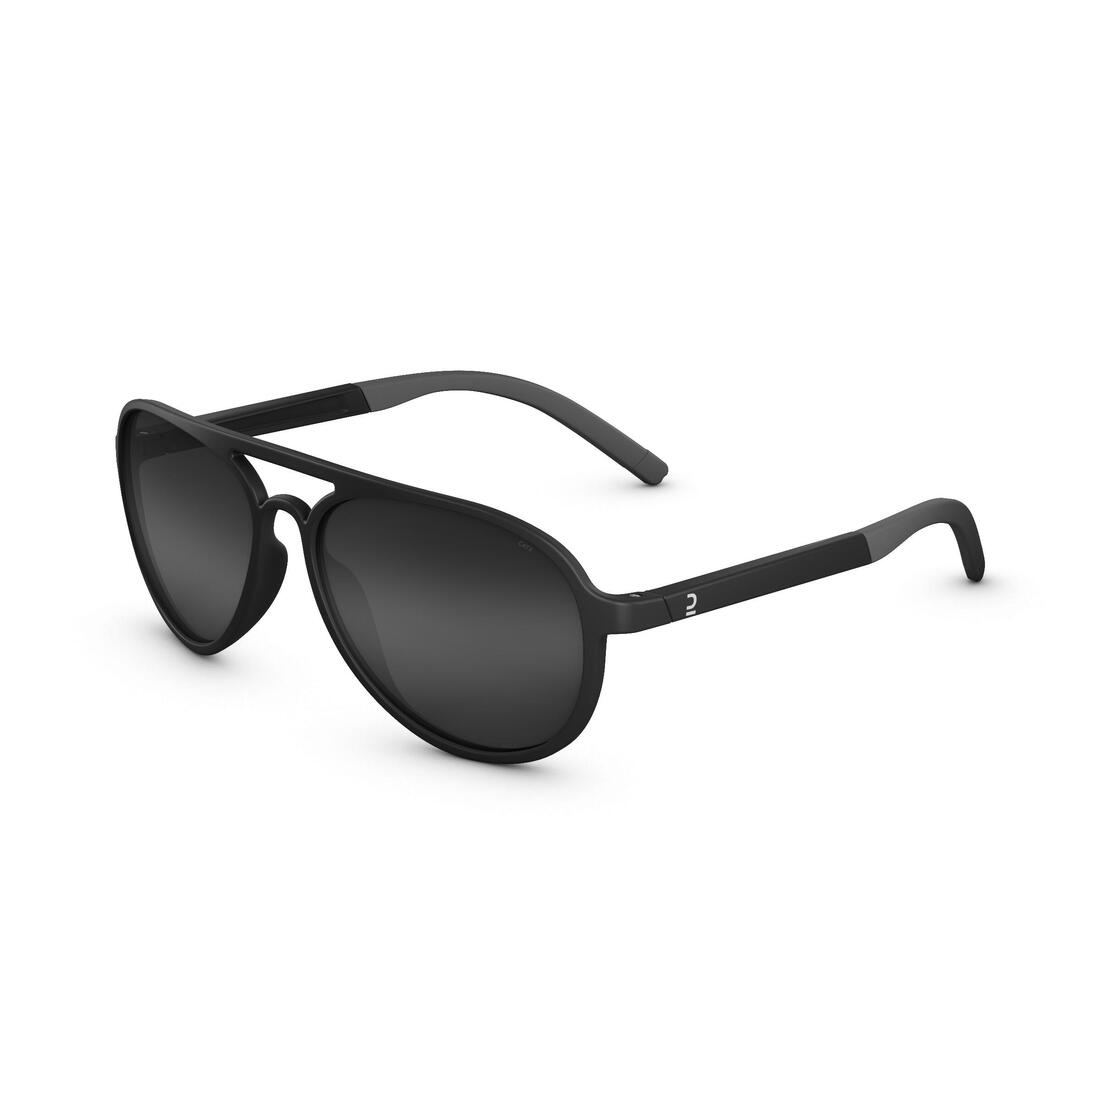 Buy ROCKRIDER by Decathlon Rectangular Sunglasses Black For Boys & Girls  Online @ Best Prices in India | Flipkart.com